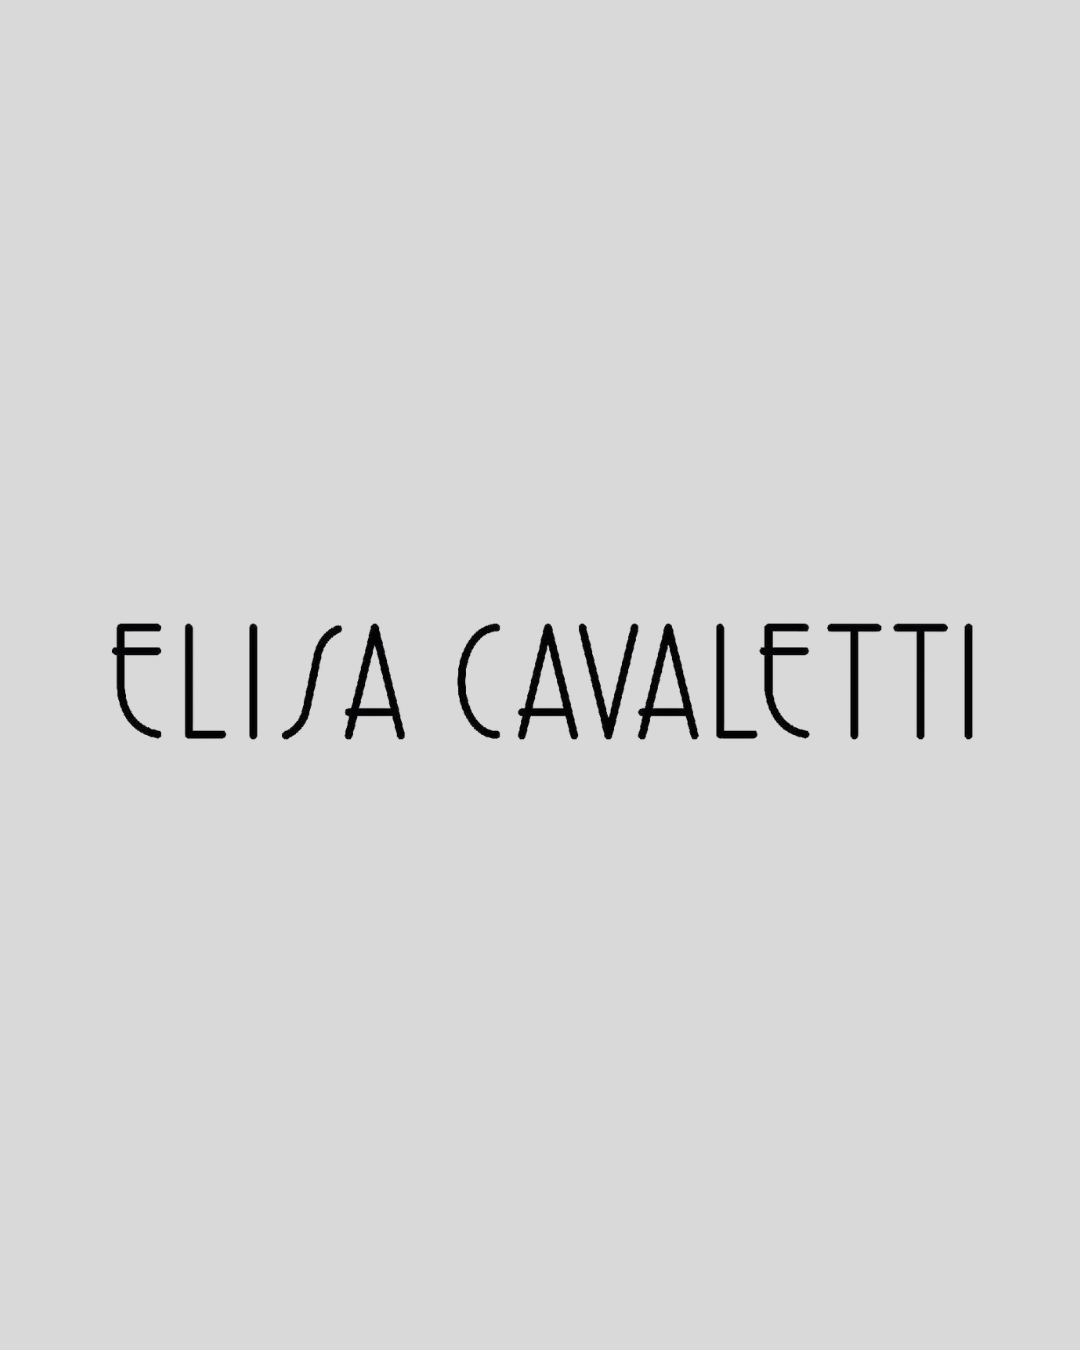 Elisa Cavaletti